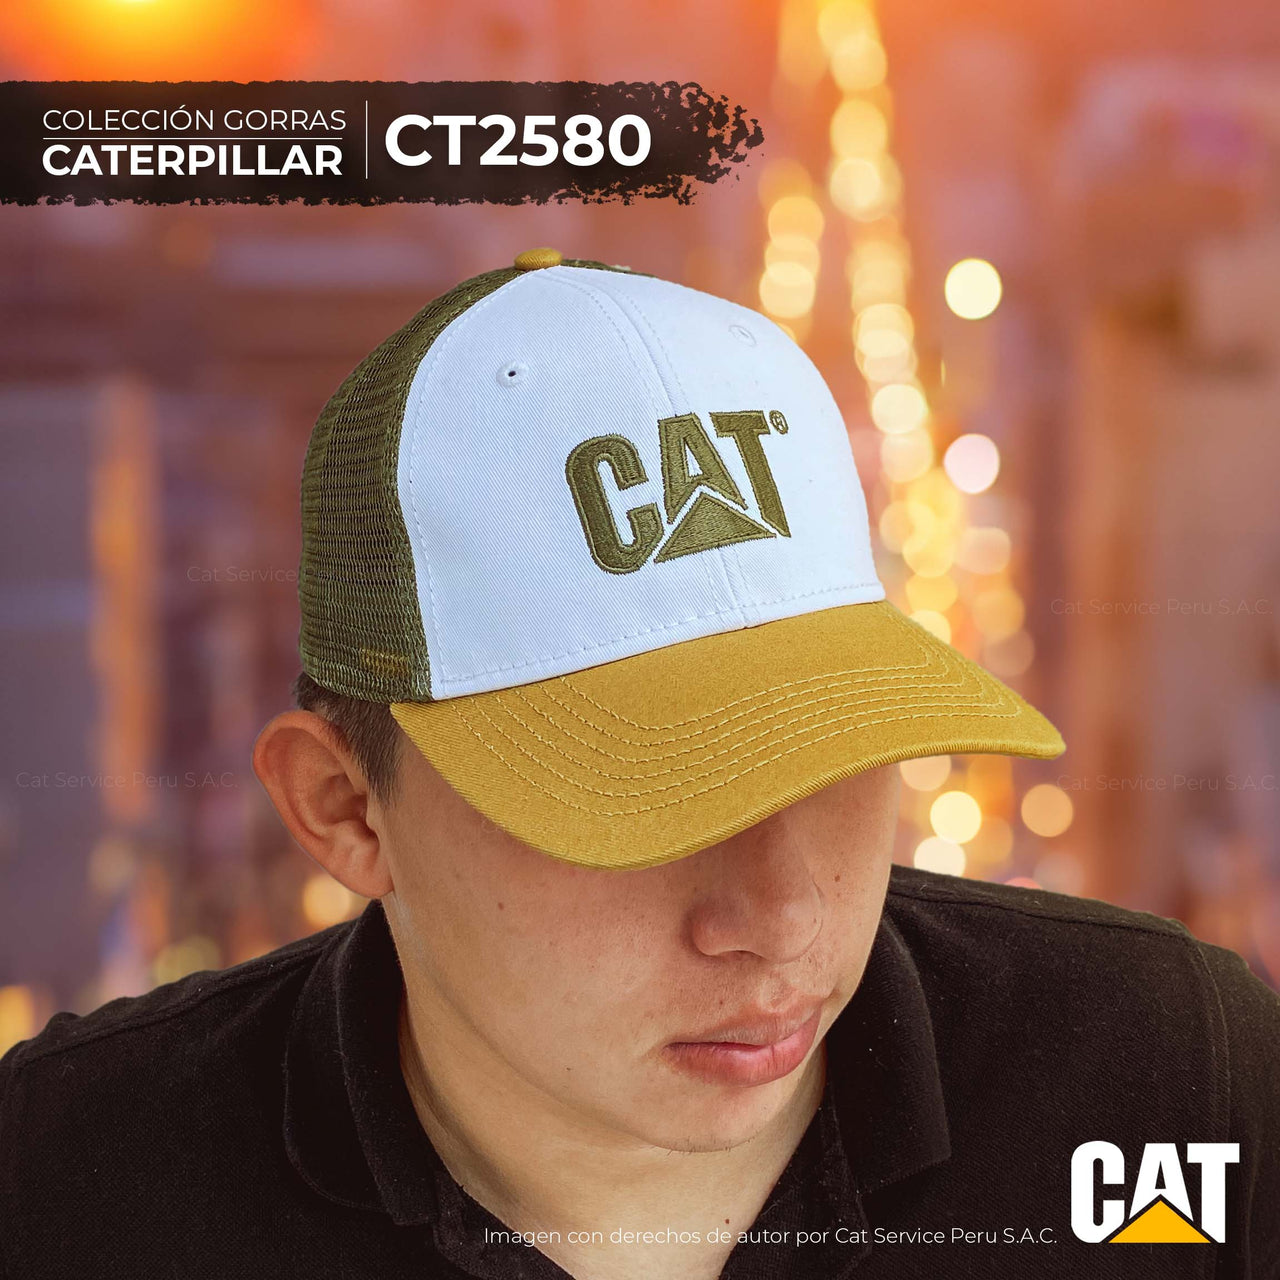 CT2580 Cat New Day Cap